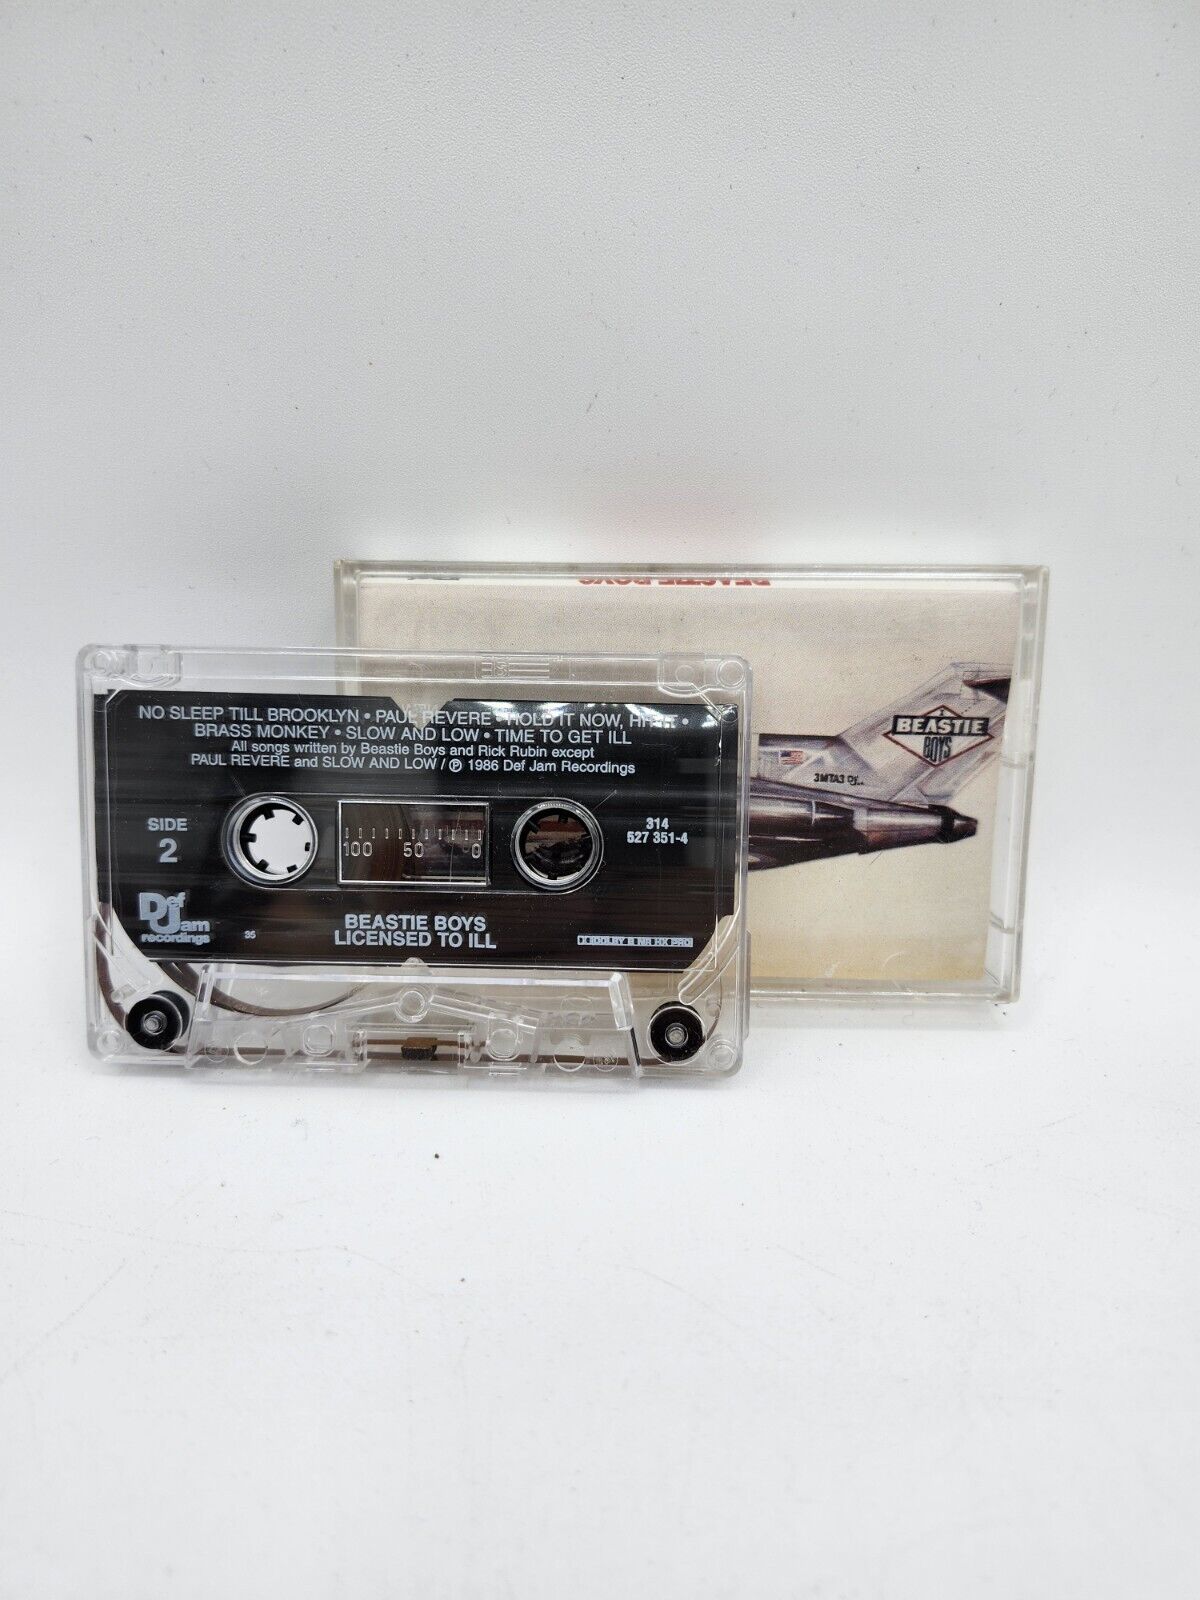 Beastie Boys “Licensed To ILL” Def Jam 1986 Cassette Tape OG USA VTG